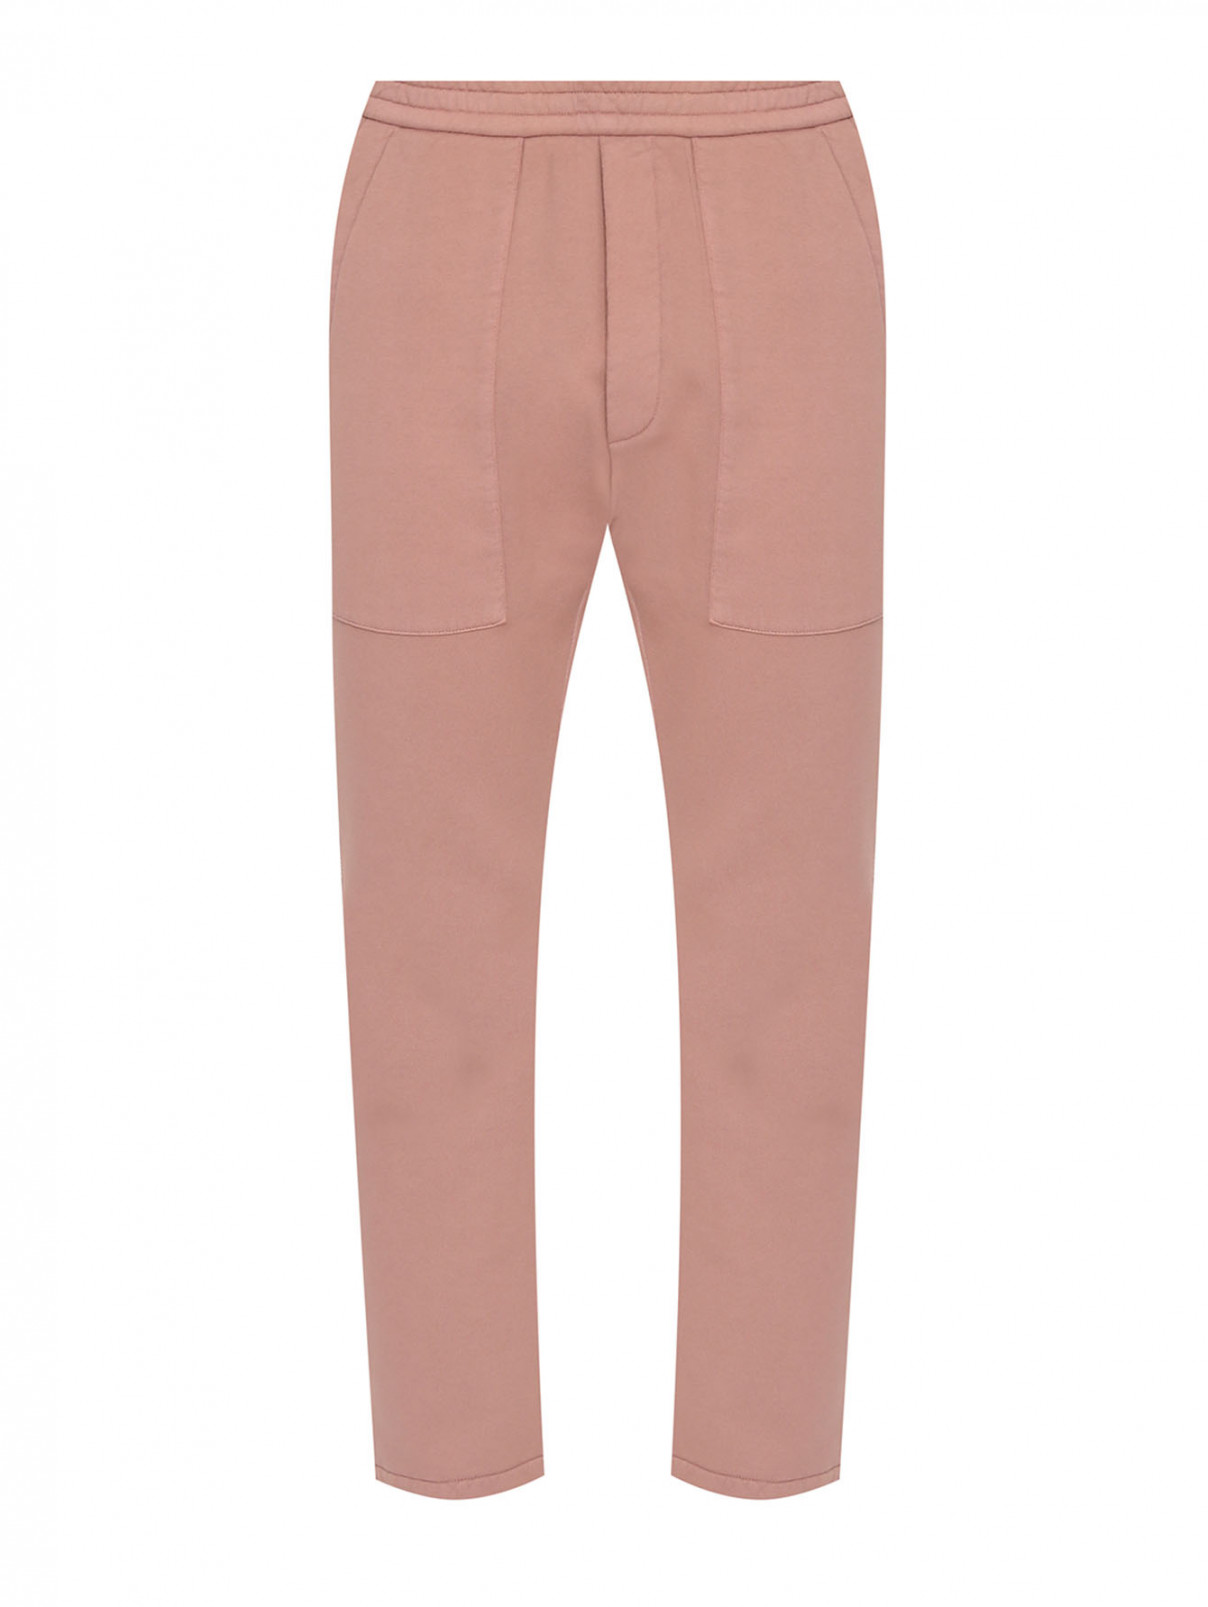 Однотонные брюки из хлопка на резинке Barena  –  Общий вид  – Цвет:  Розовый